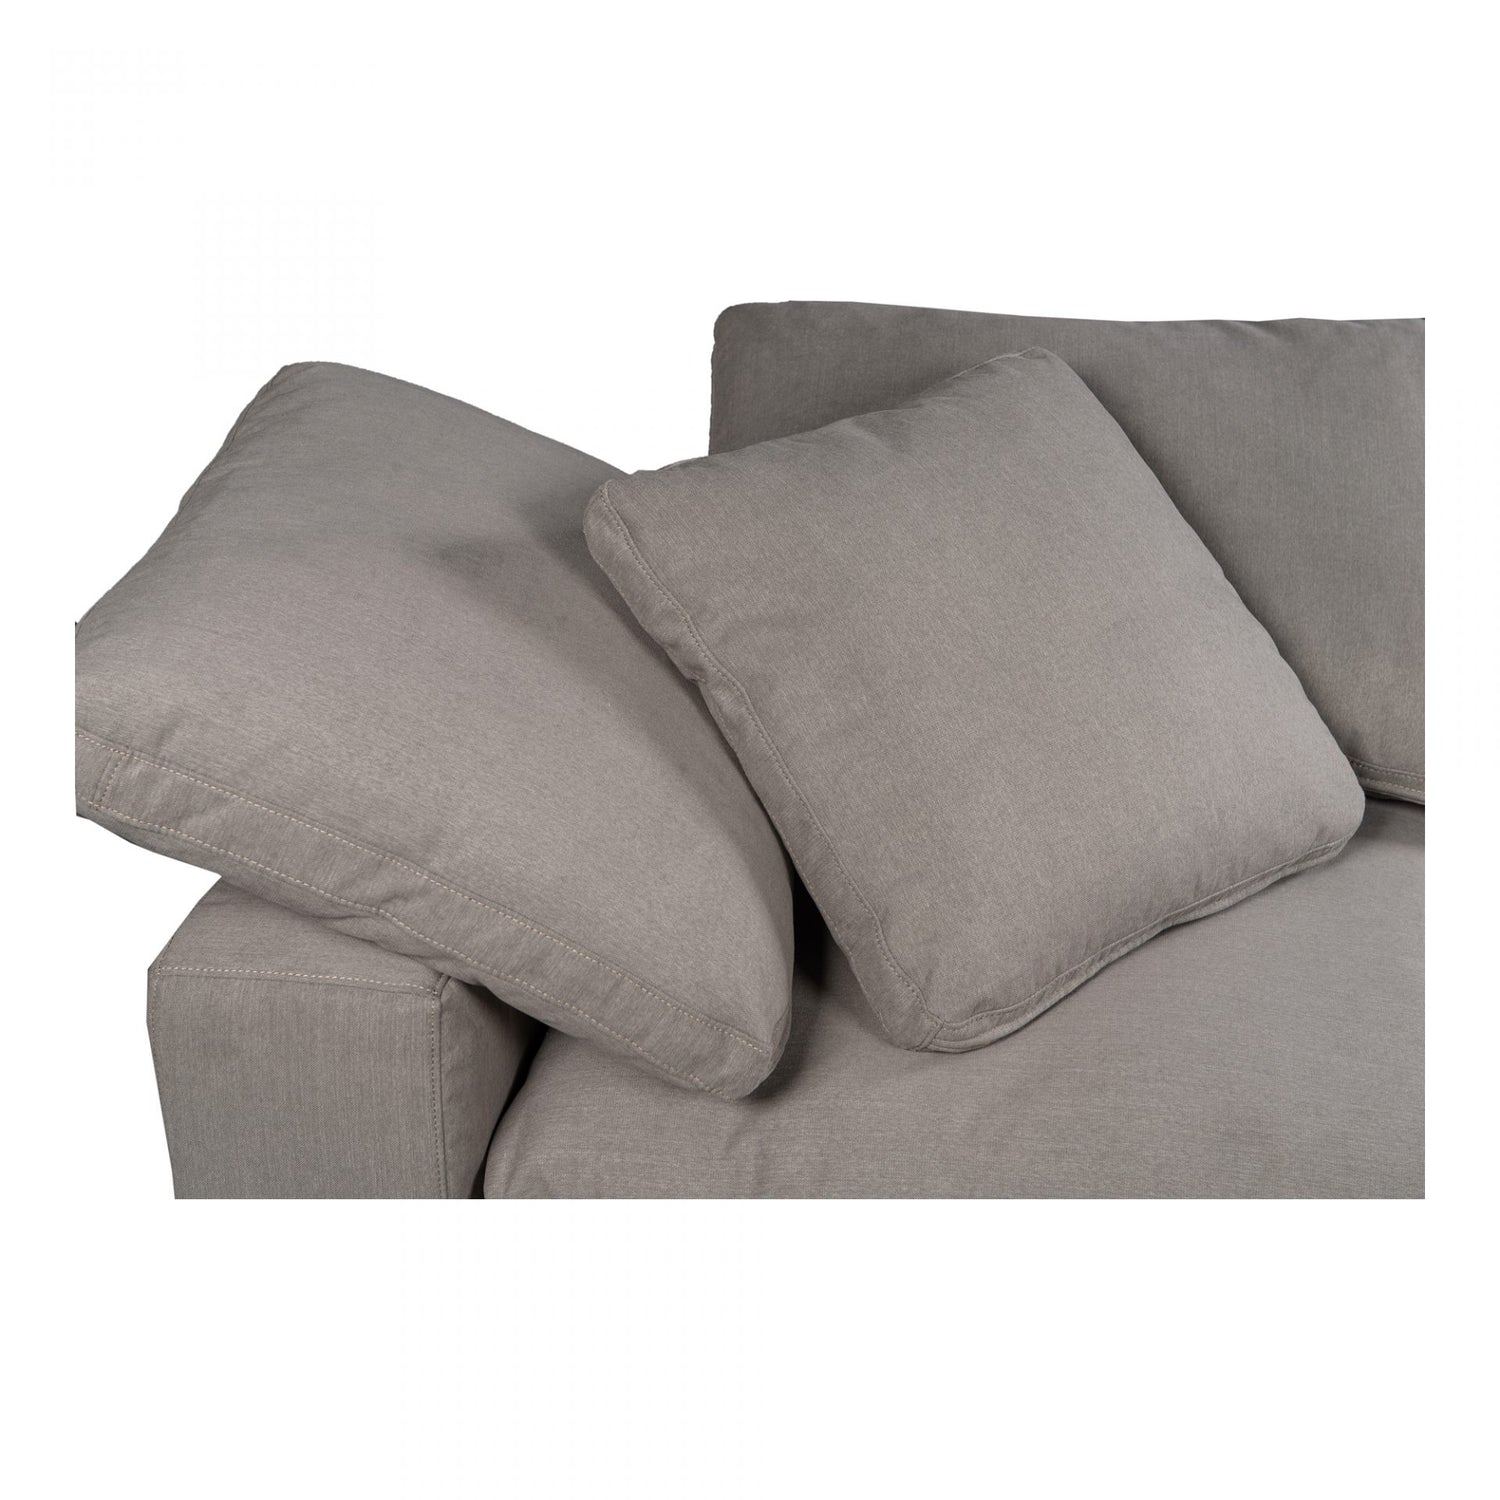 komfi-2-piece-modular-sofa-grey 